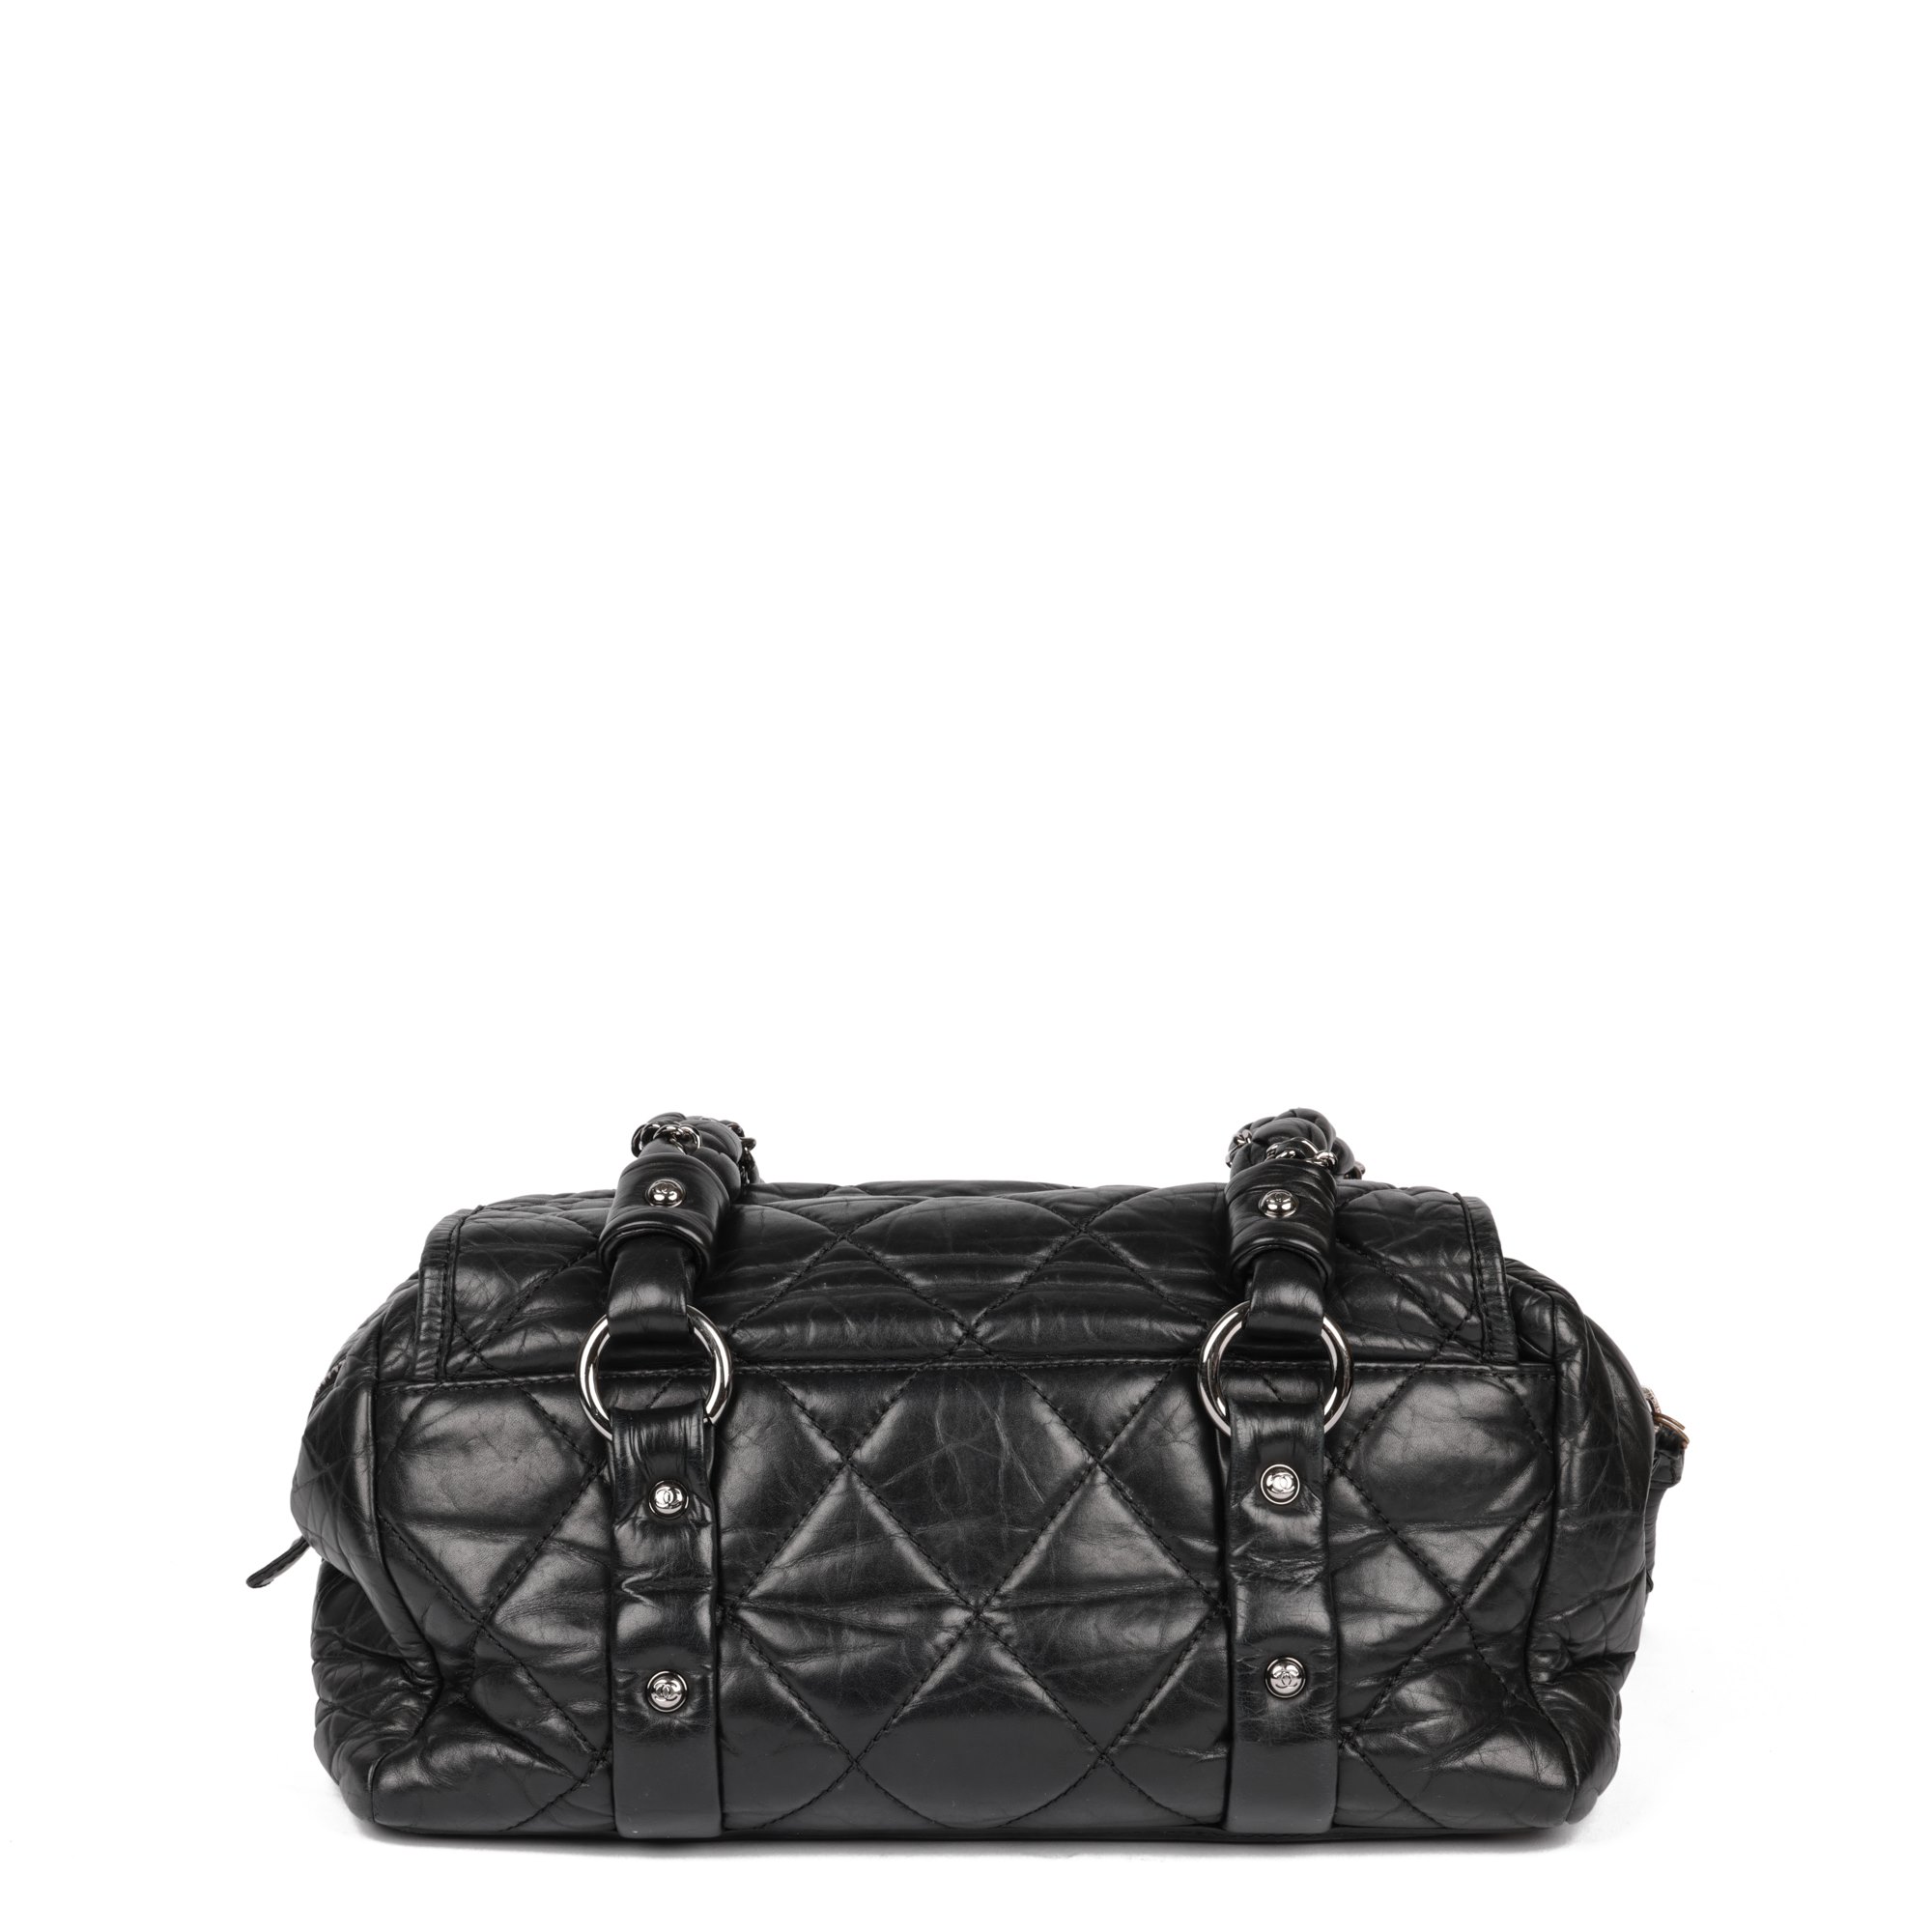 Chanel Lady Braid Flap Tote 2008 CB862 | Second Hand Handbags